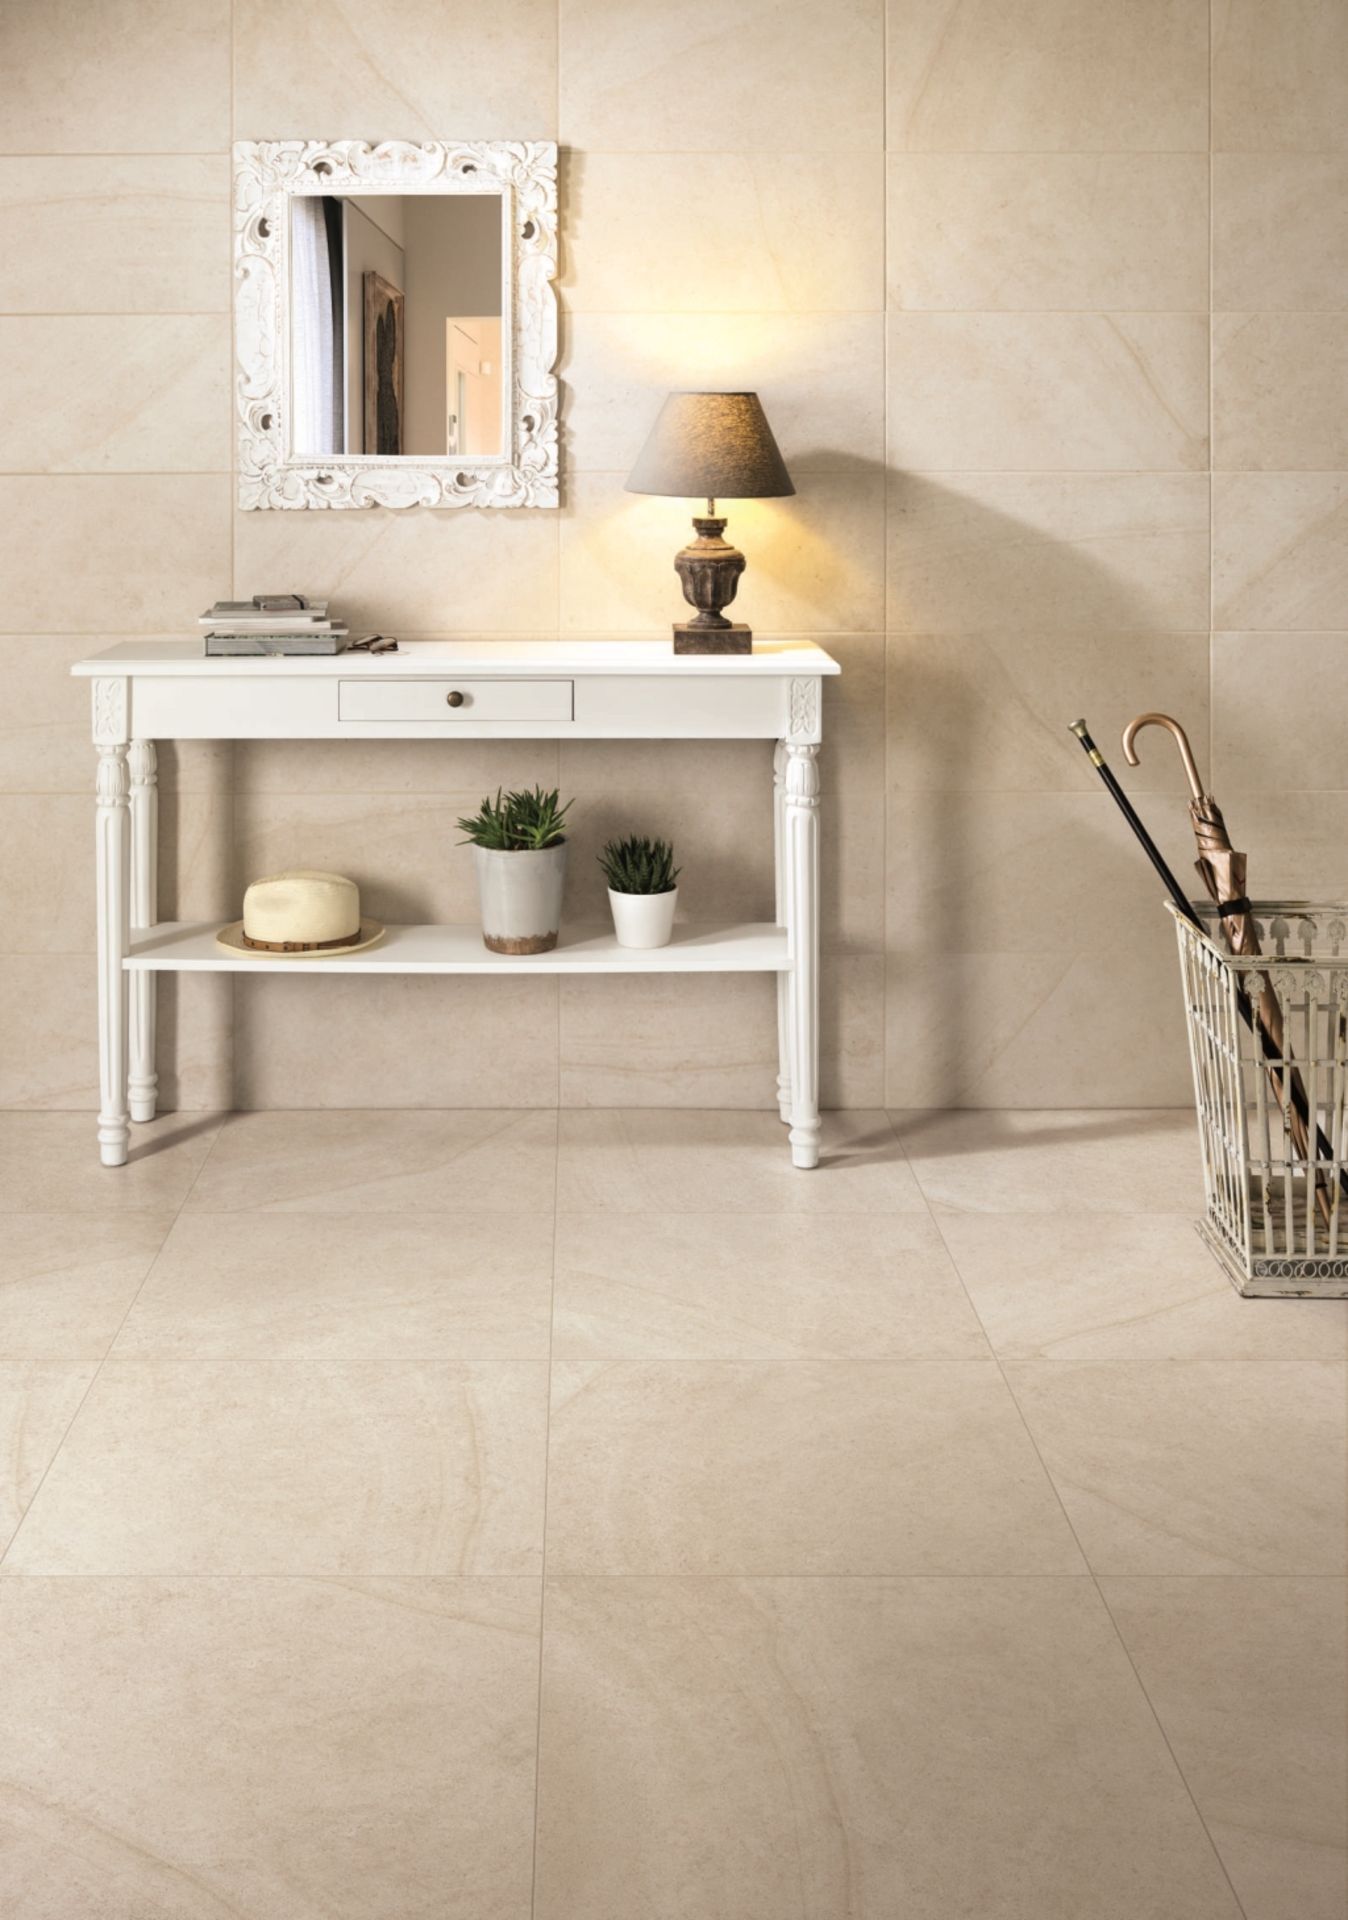 Maison Blanc 9MM 60X60CM High Quality Italian Porcelain tiles 6 pallets - Image 3 of 3